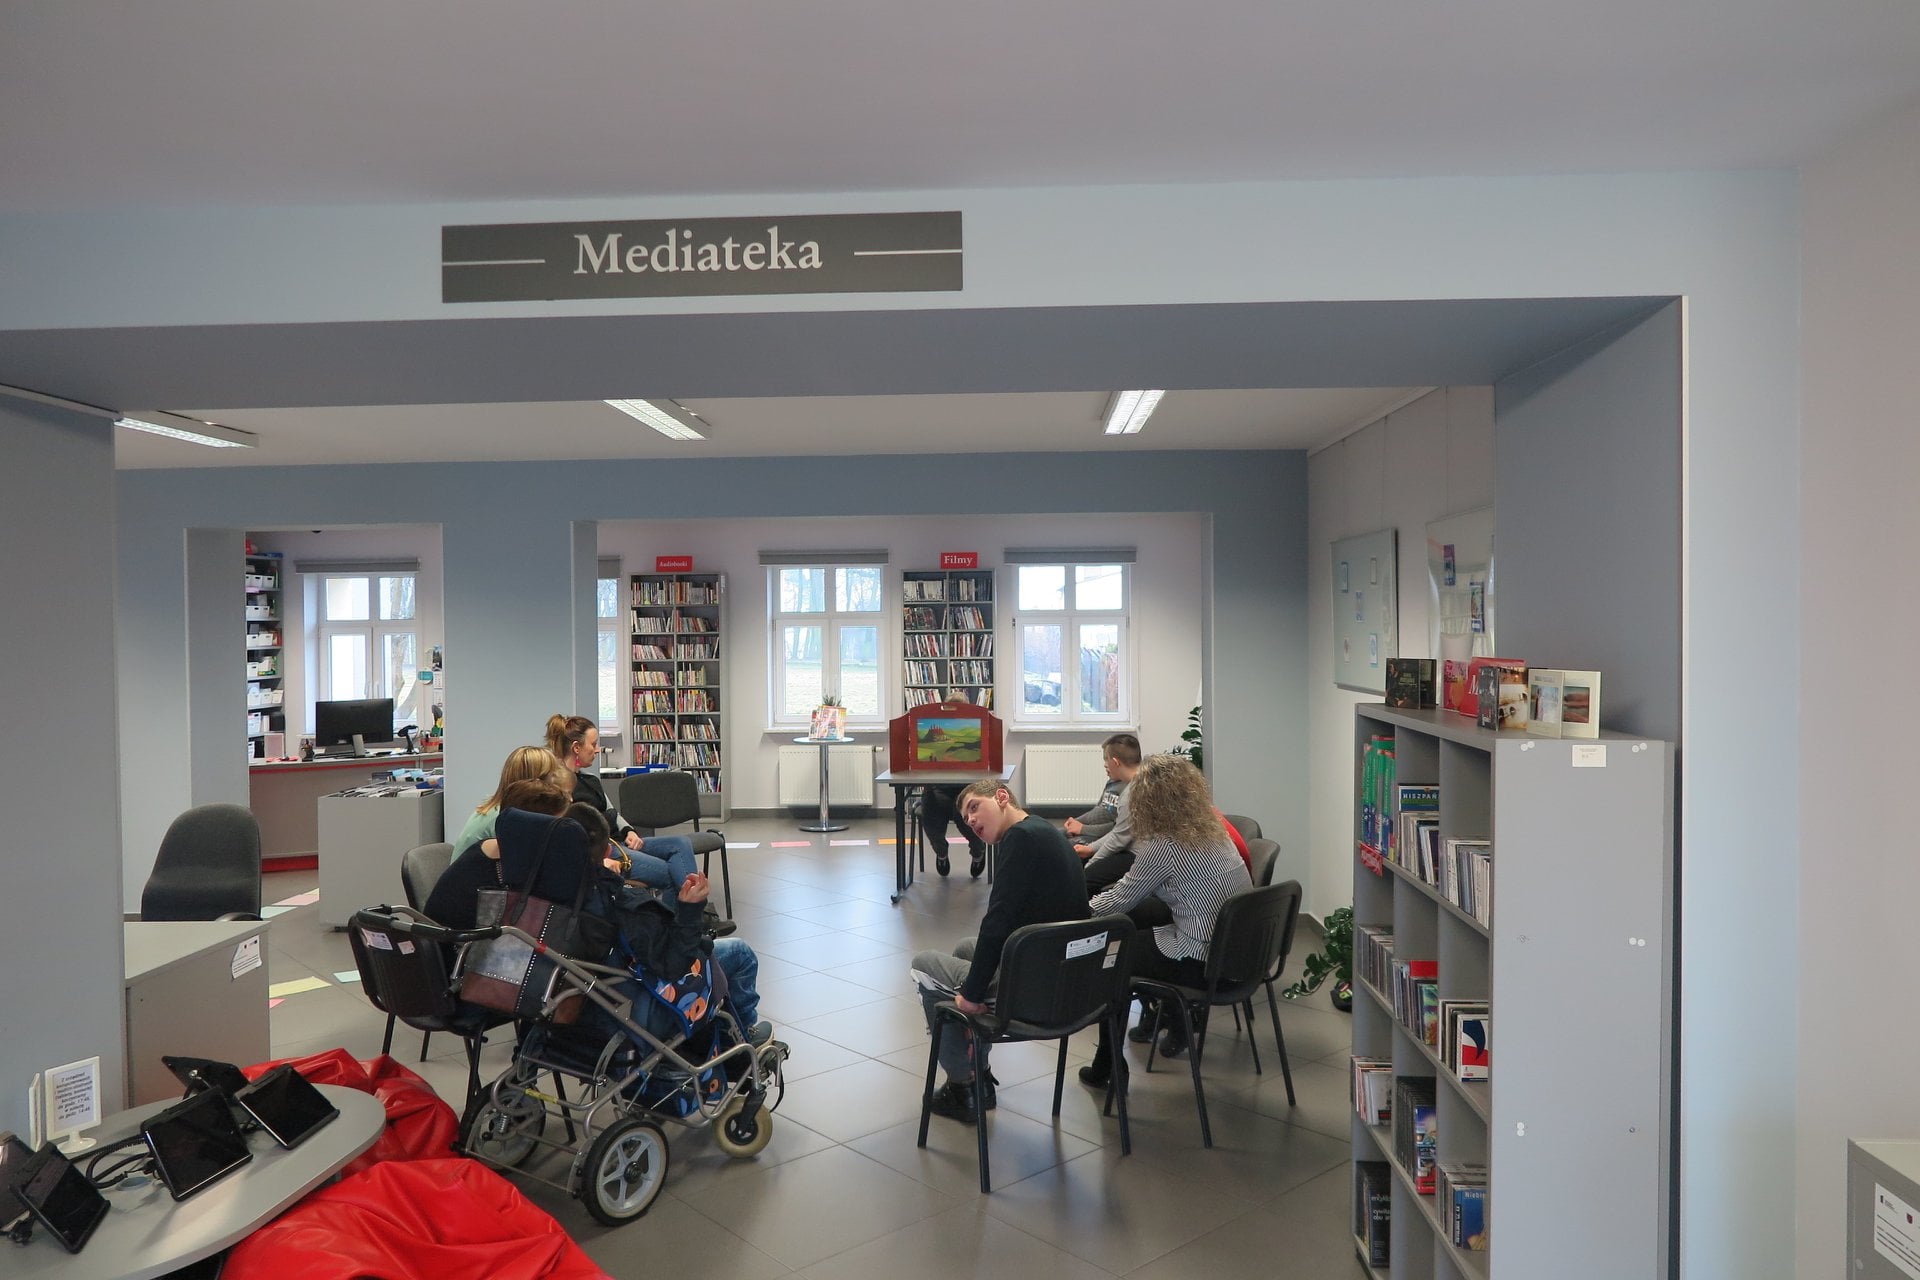 Wnętrze biblioteki, mediateka. Dzieci z Ośrodka Rehabilitacyjno-Edukacyjno- Wychowawczego z Działdowa wraz z opiekunami słuchają teatrzyku Kamishibai który czyta bibliotekarka Małgorzata Trąmpczyńska.